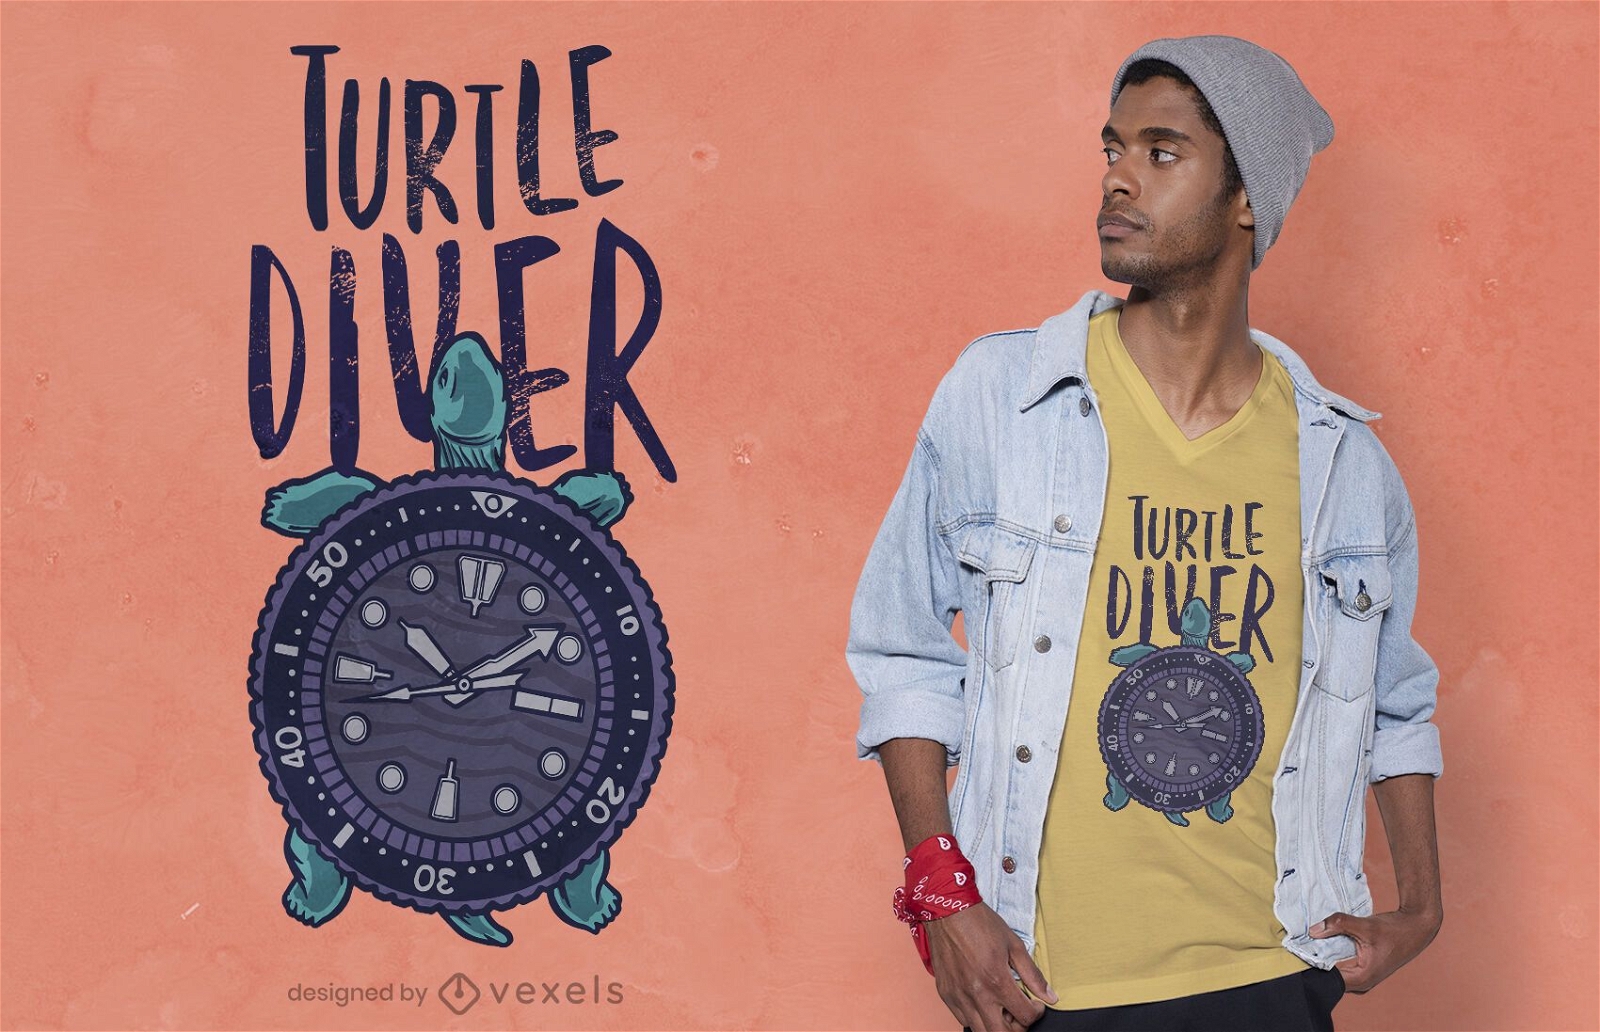 Turtle diver t-shirt design